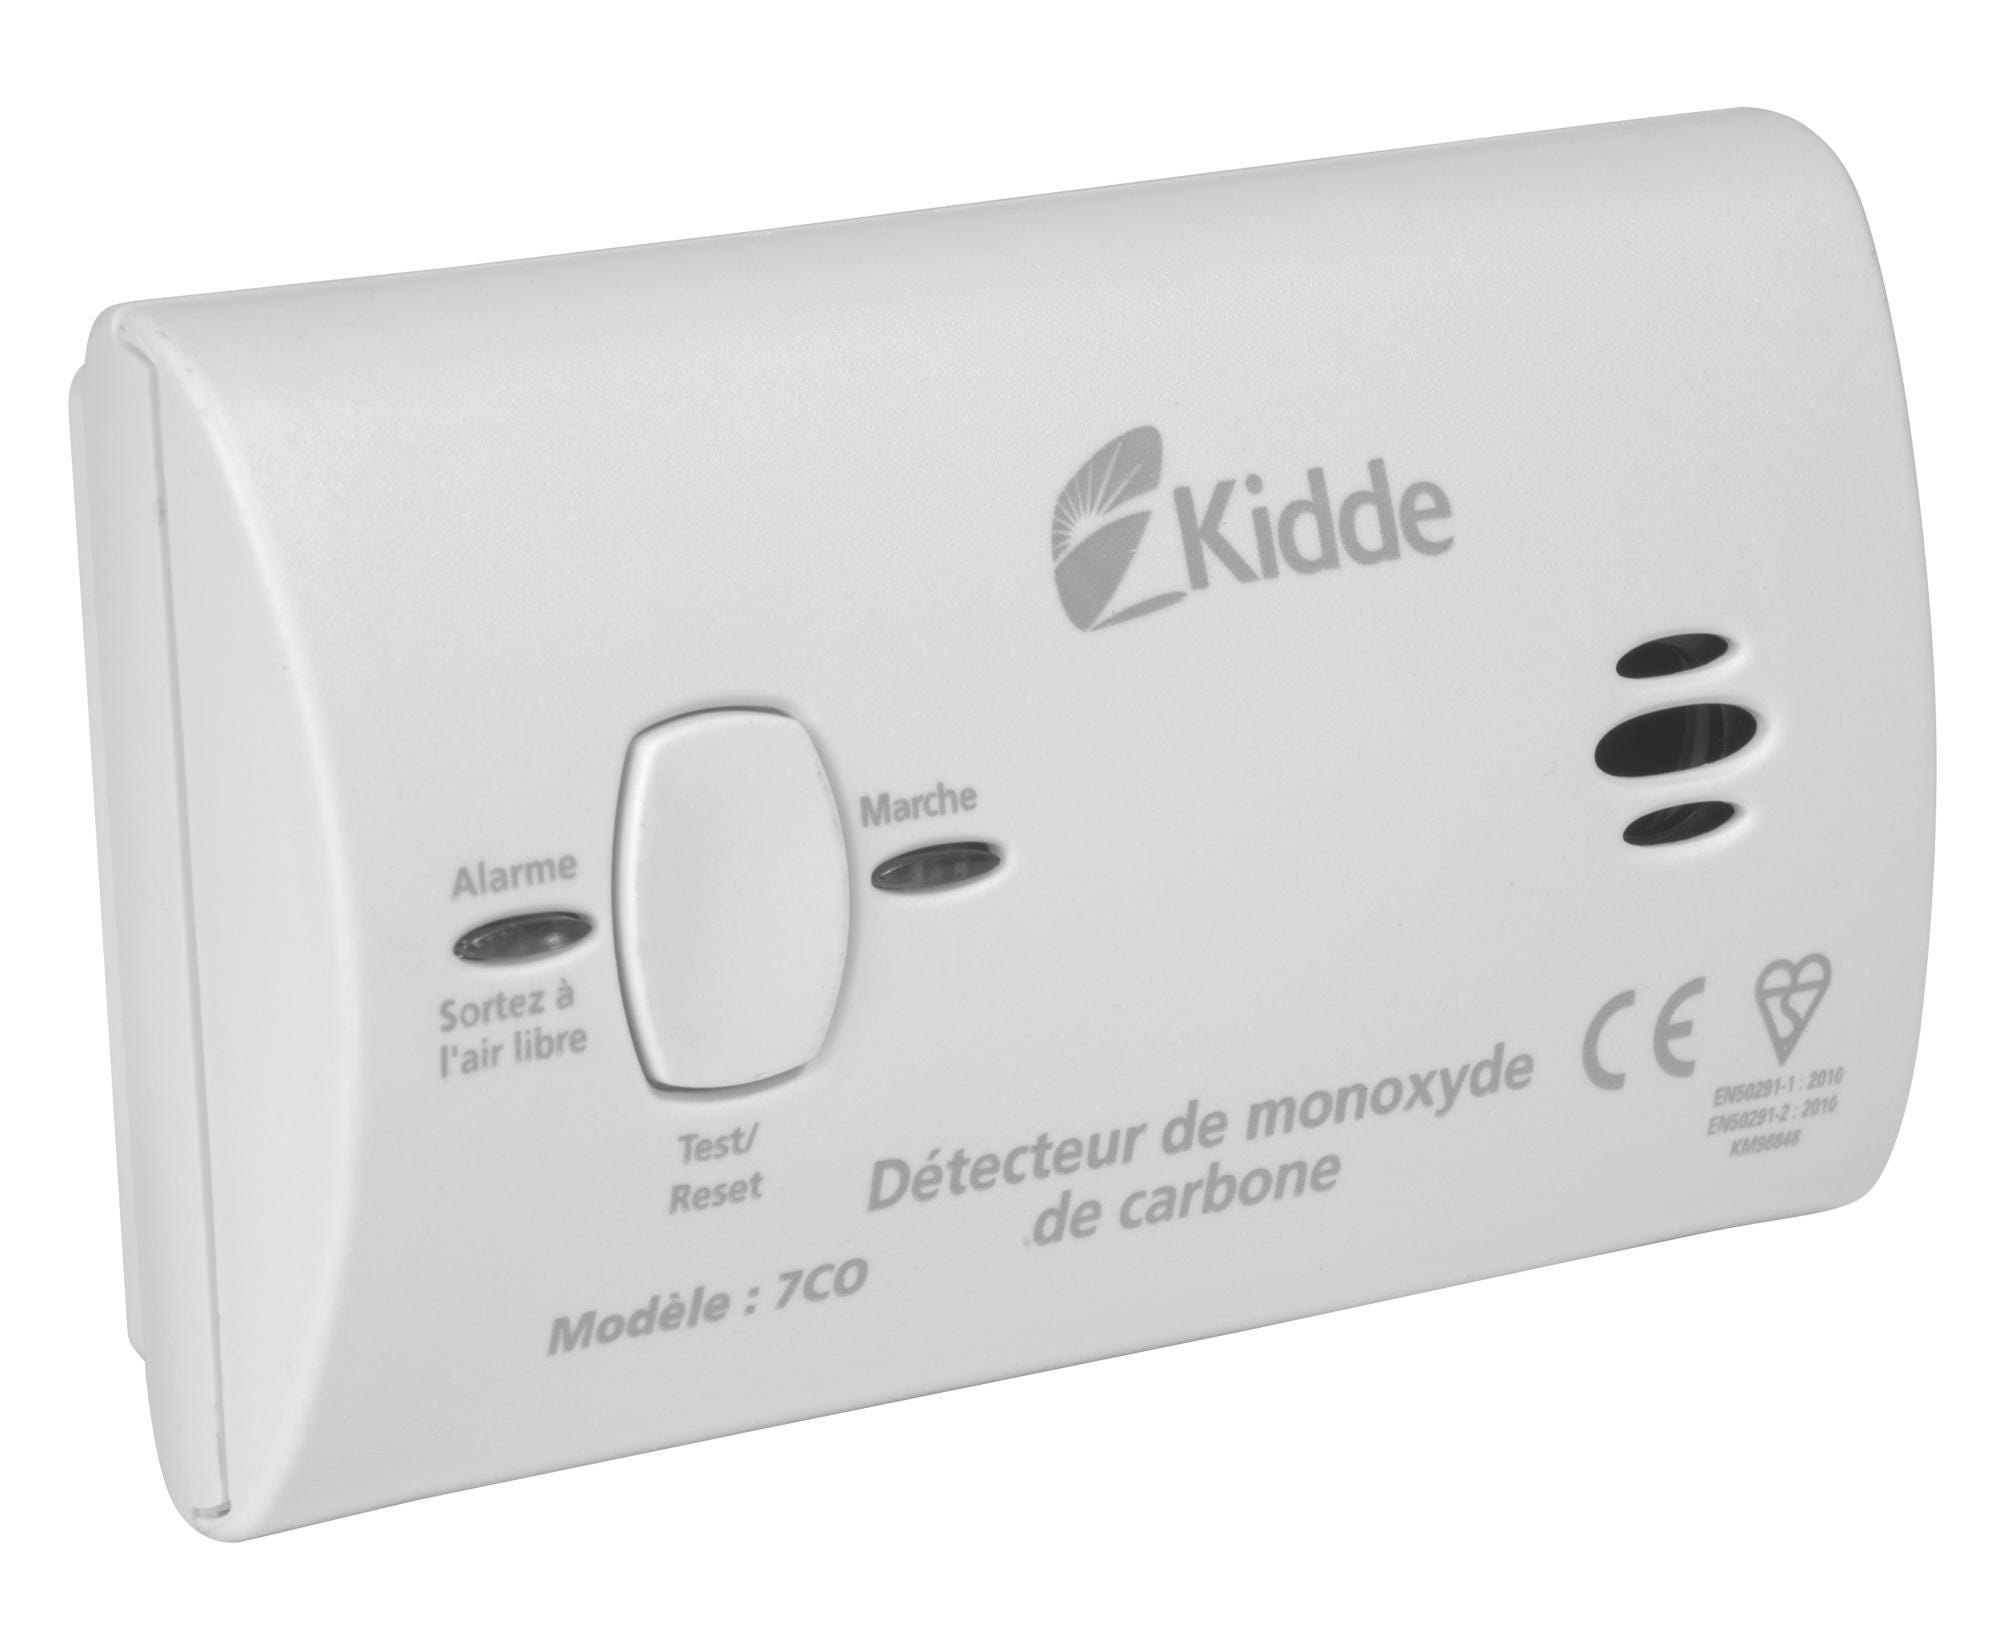 Détecteur de monoxyde de carbone KIDDE 7co-k798, 1 an